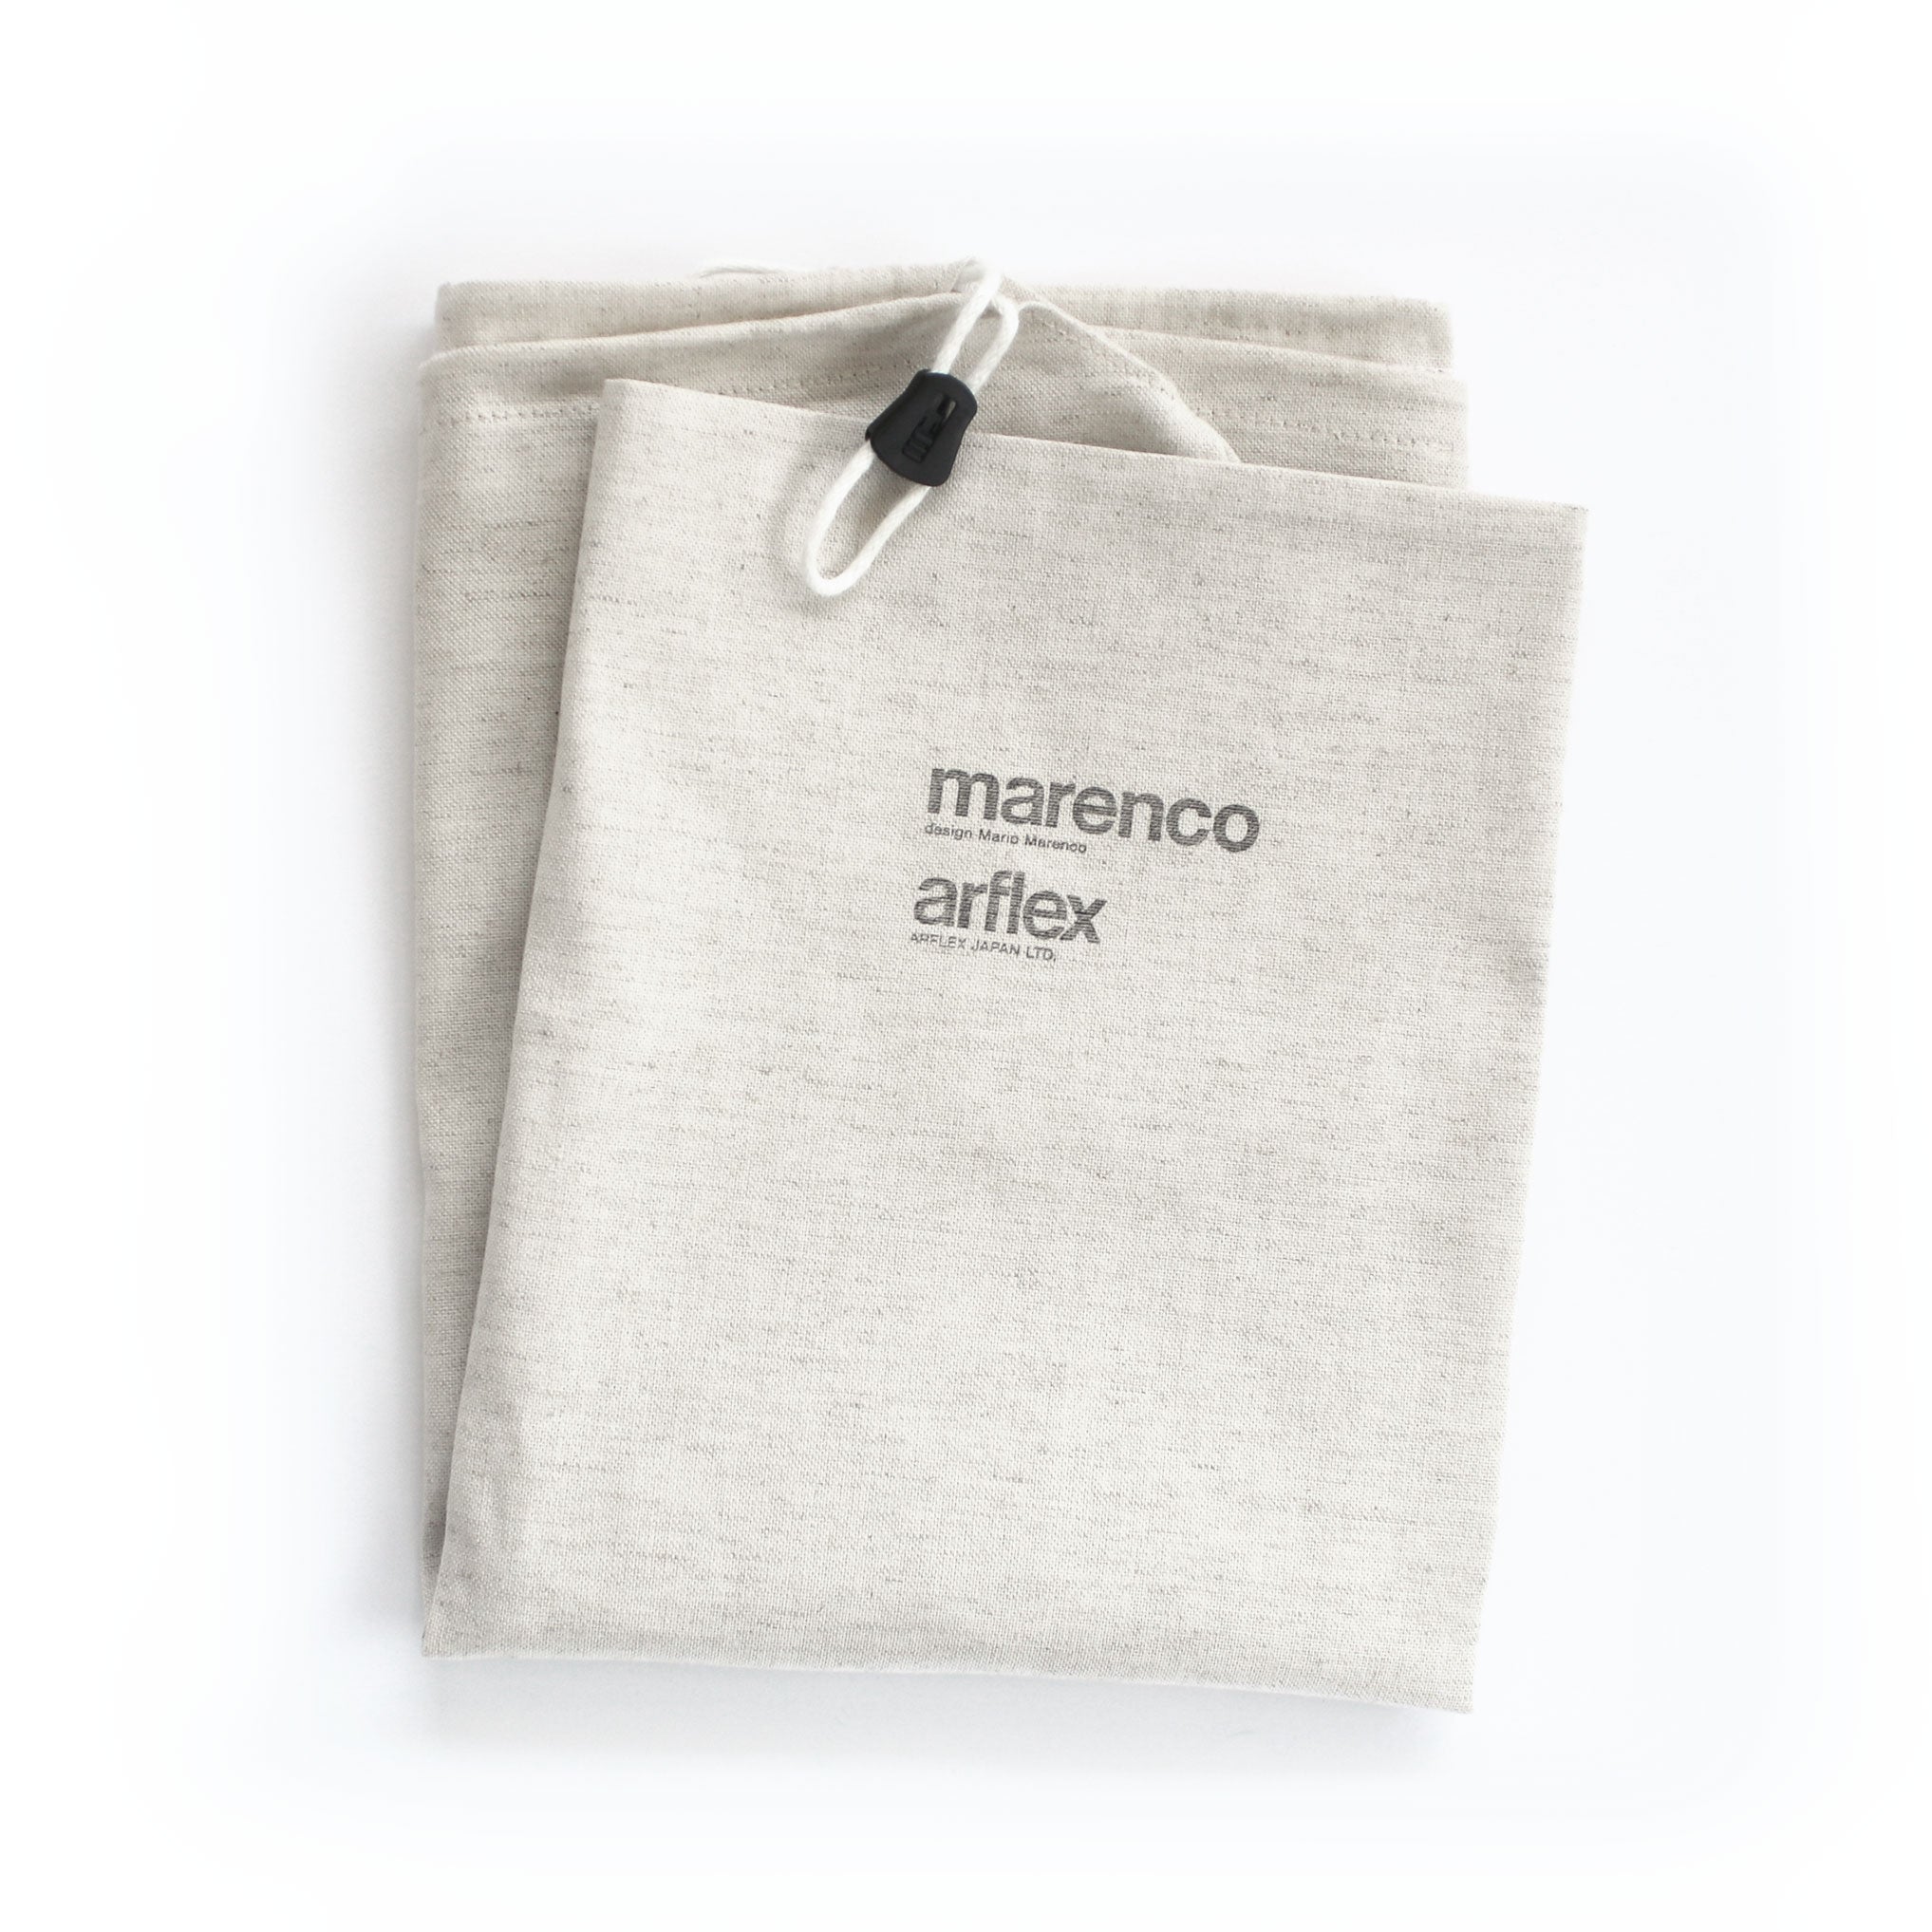 arflex 公式通販】替えカバー MARENCO マレンコ / ファブリック ソファ